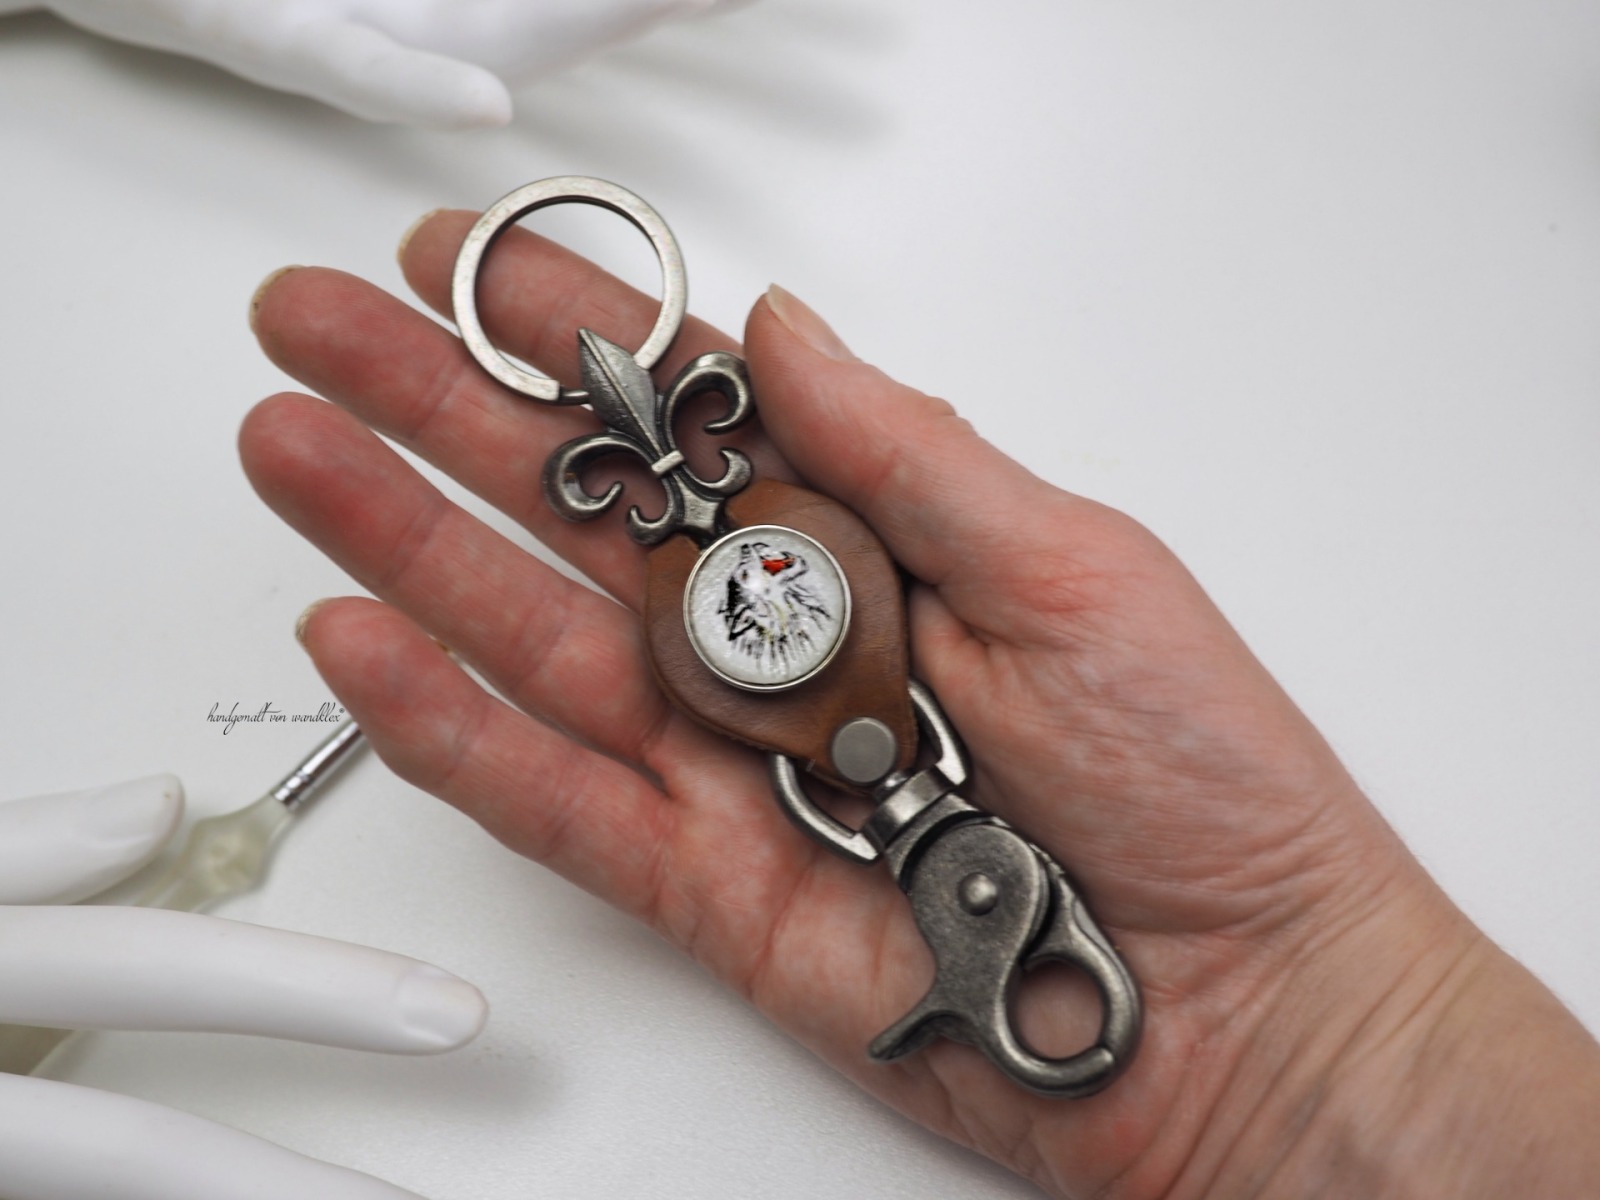 robuster großer Leder-Schlüsselanhänger mit wählbarem handgemaltem Druckknopfmotiv austauschbar